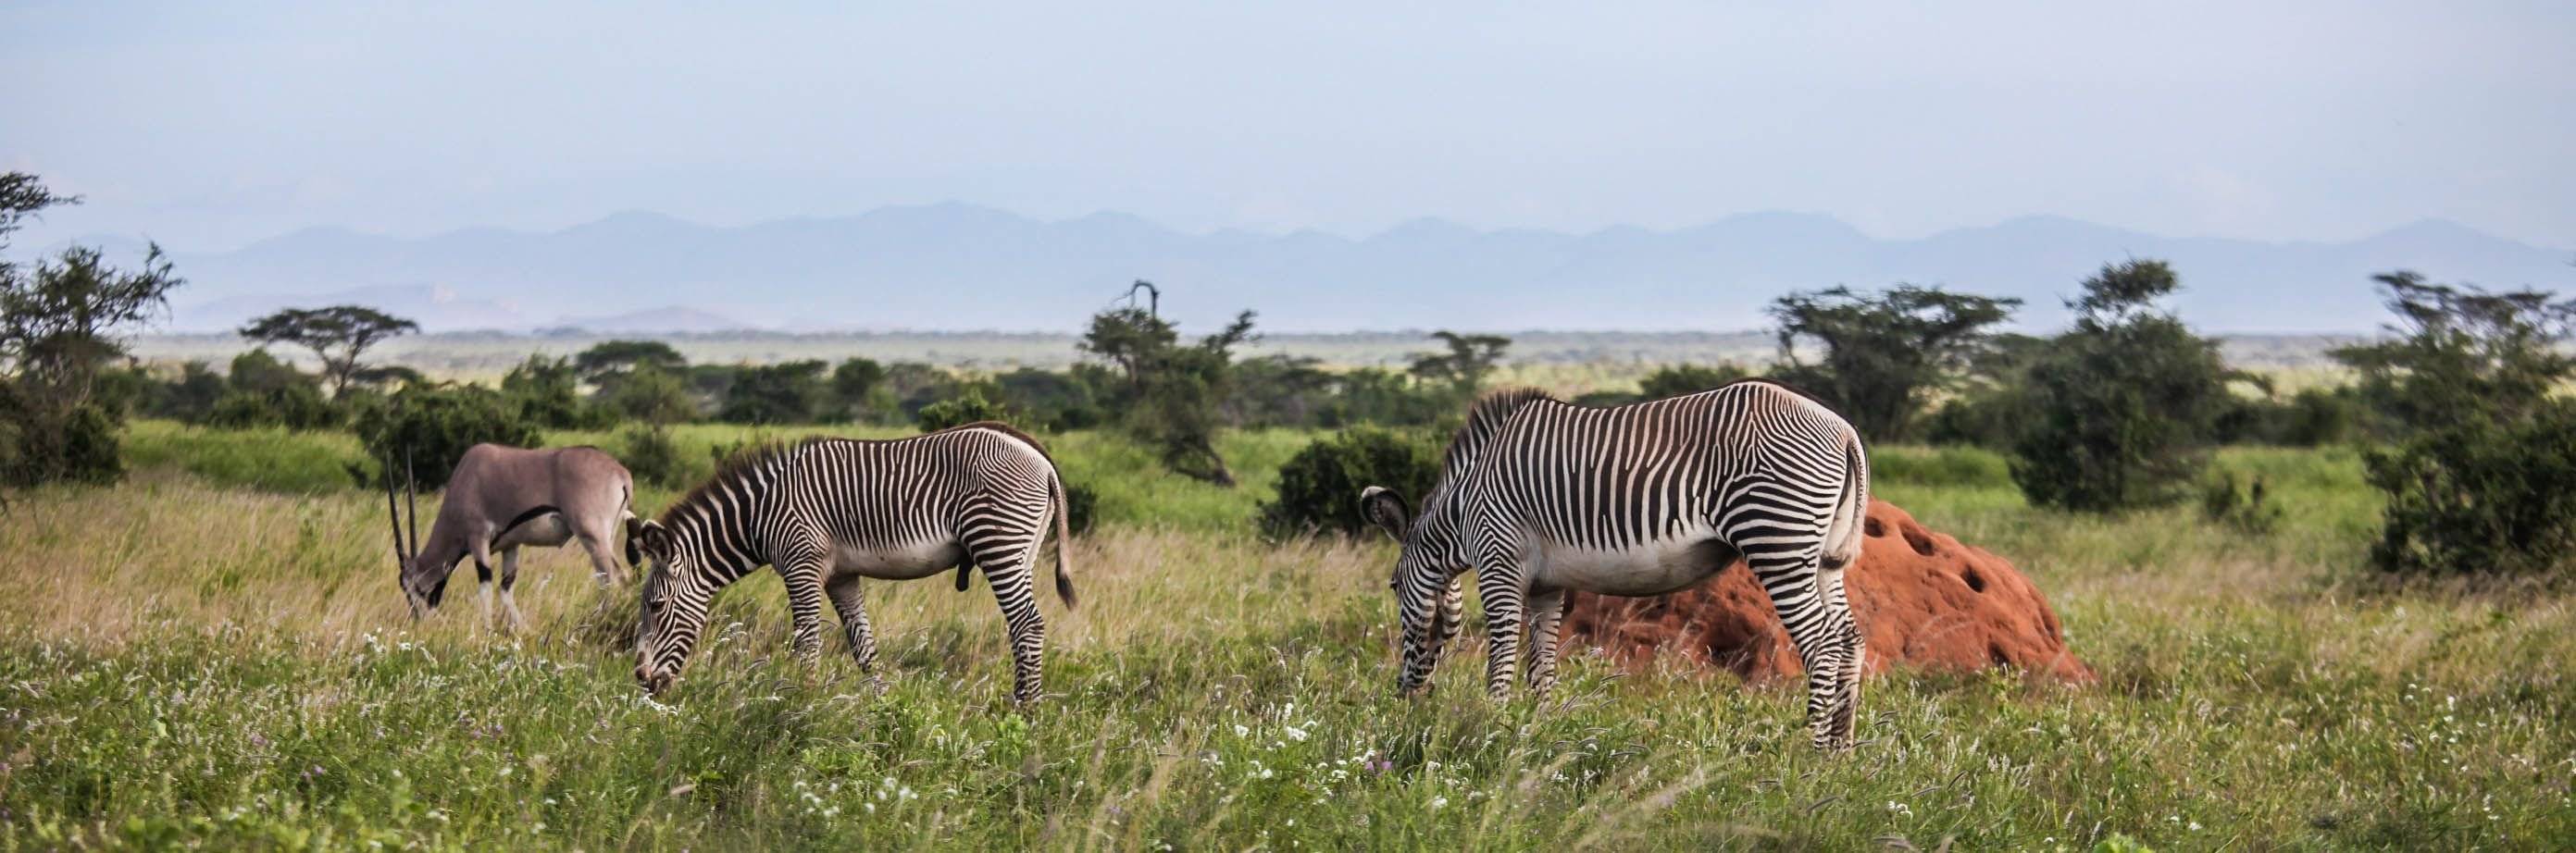 Visita al Parque Nacional de Samburu